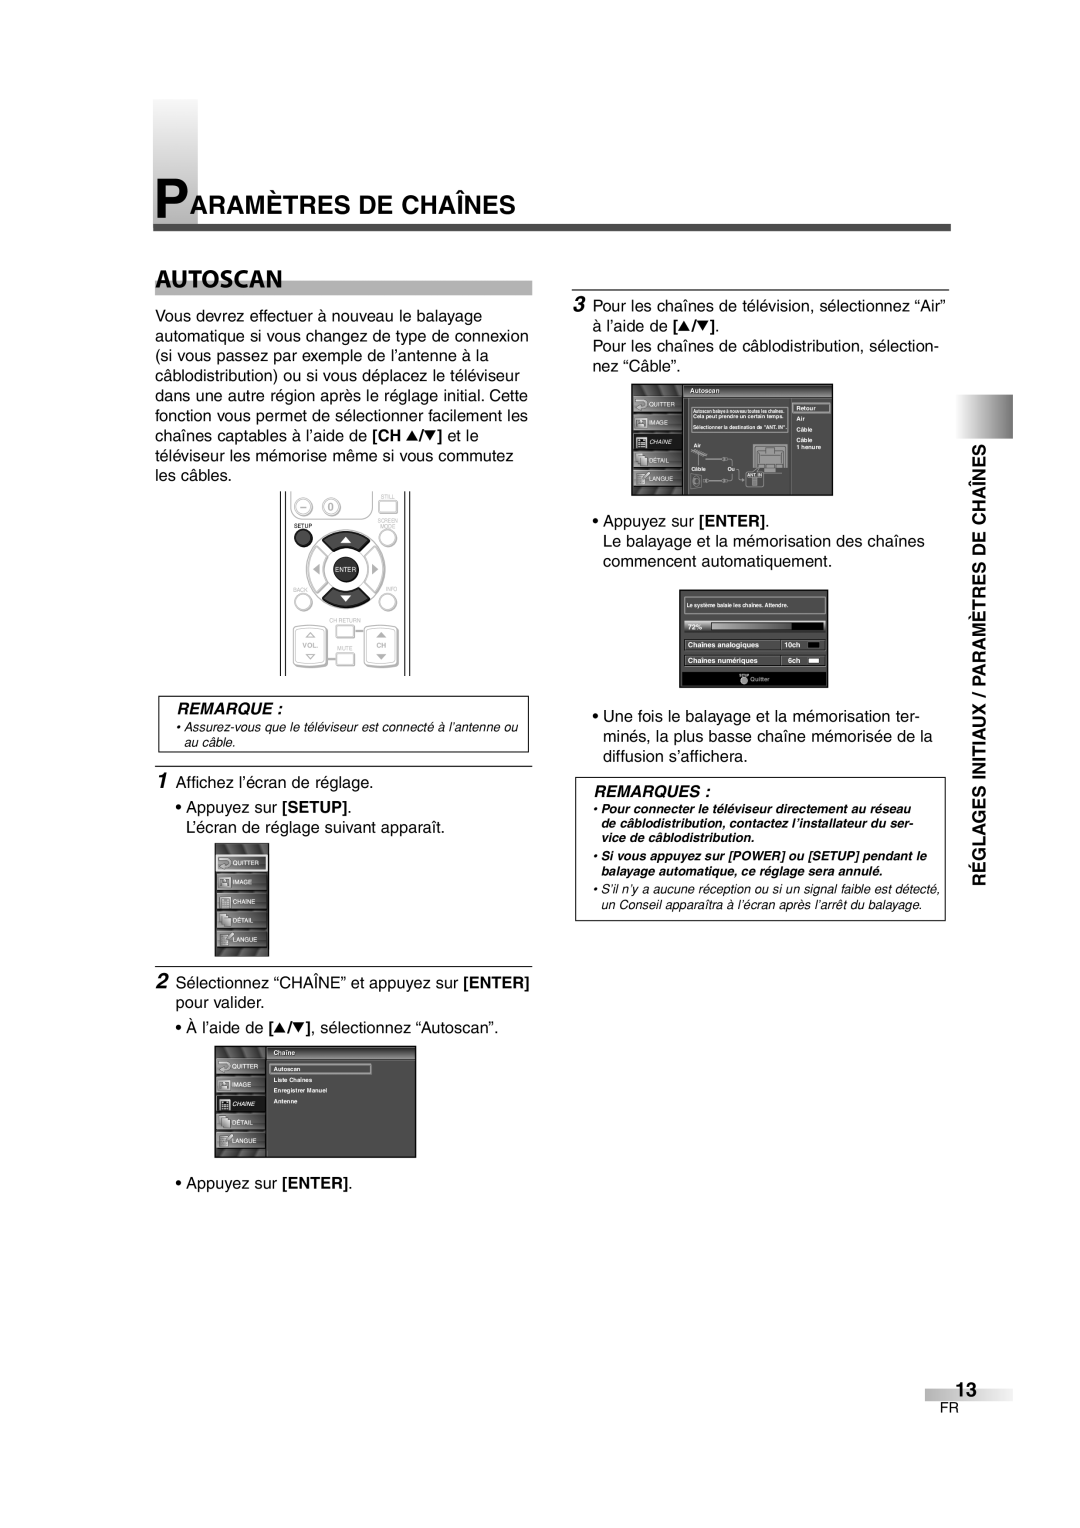 FUNAI CIWL3206 owner manual Réglages Initiaux / Paramètres De Chaînes, Autoscan, Remarques 